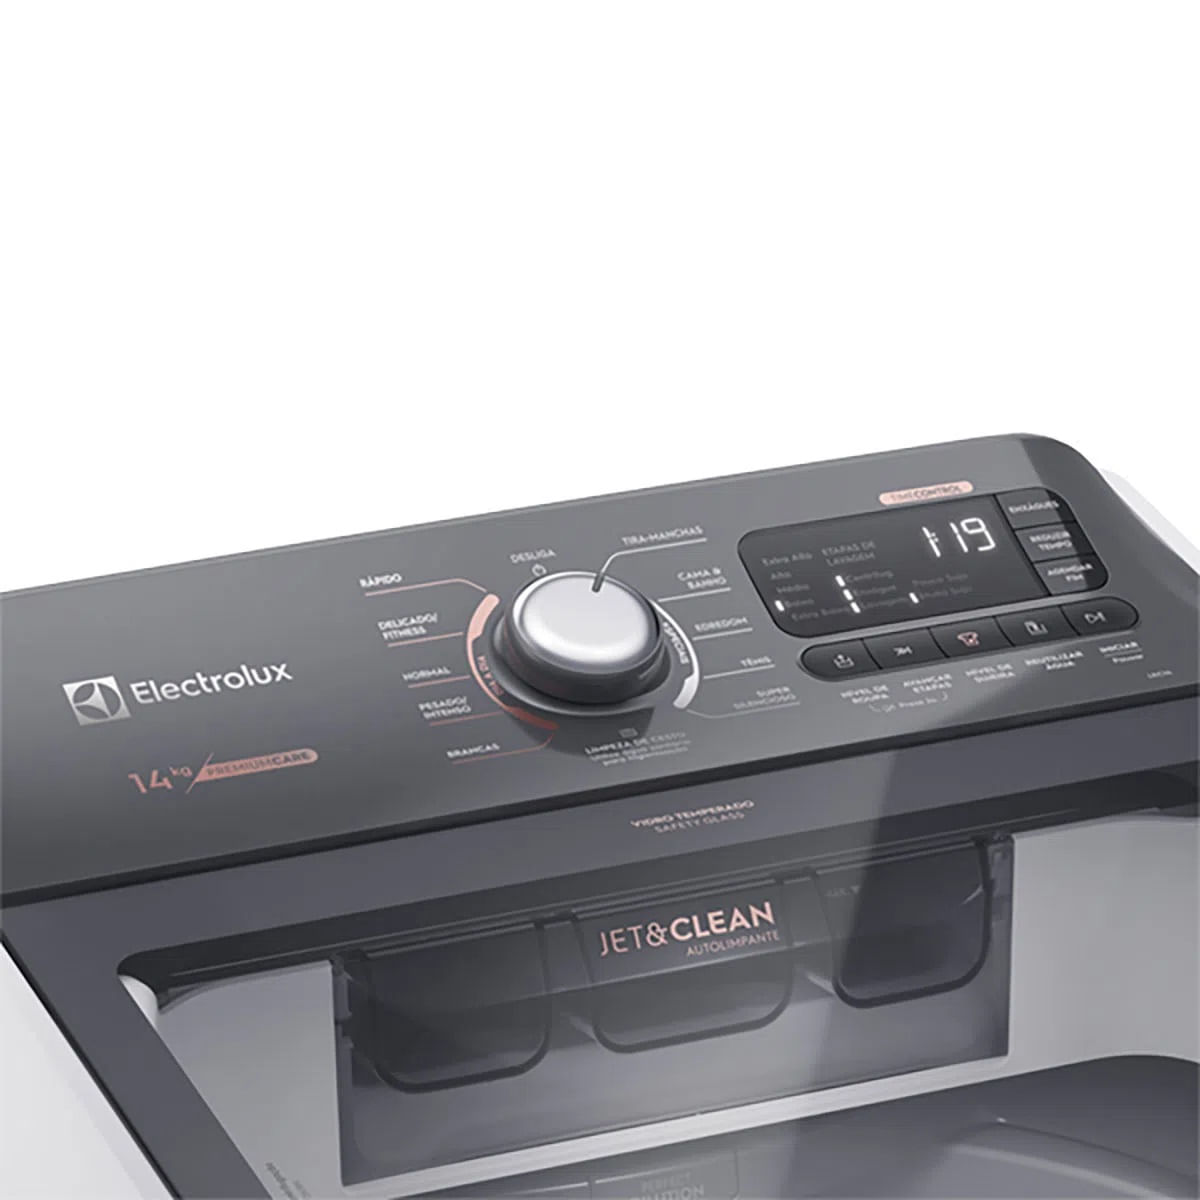 maquina-de-lavar-14kg-electrolux-premium-care-com-cesto-inox-jet-clean-e-time-control-lec14-127v-3.jpg